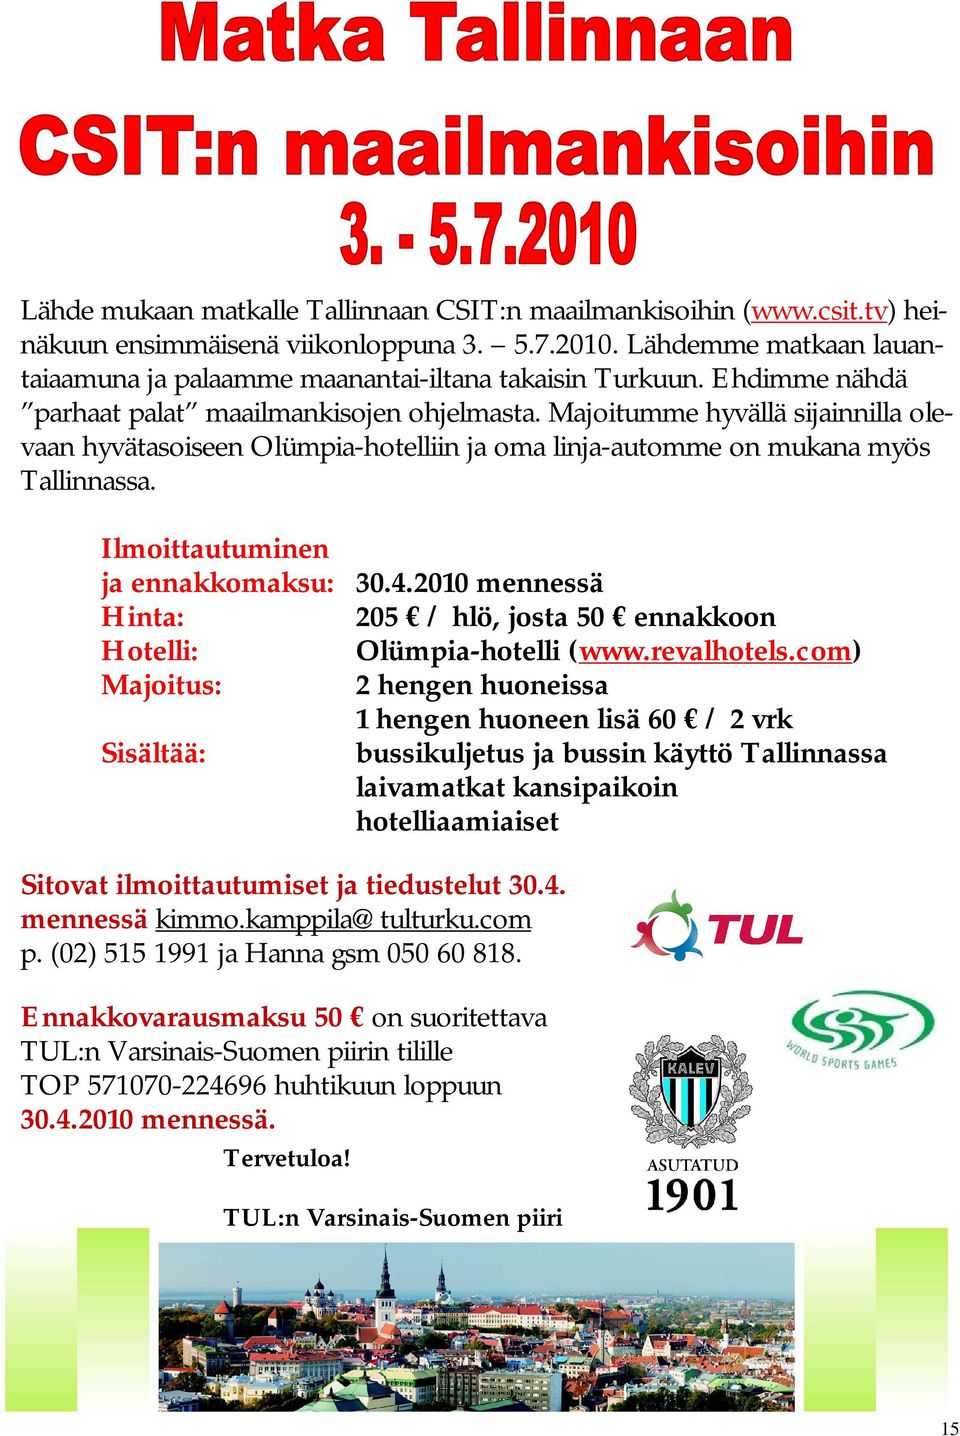 Ilmoittautuminen ja ennakkomaksu: 30.4.2010 mennessä Hinta: 205 / hlö, josta 50 ennakkoon Hotelli: Olümpia-hotelli (www.revalhotels.